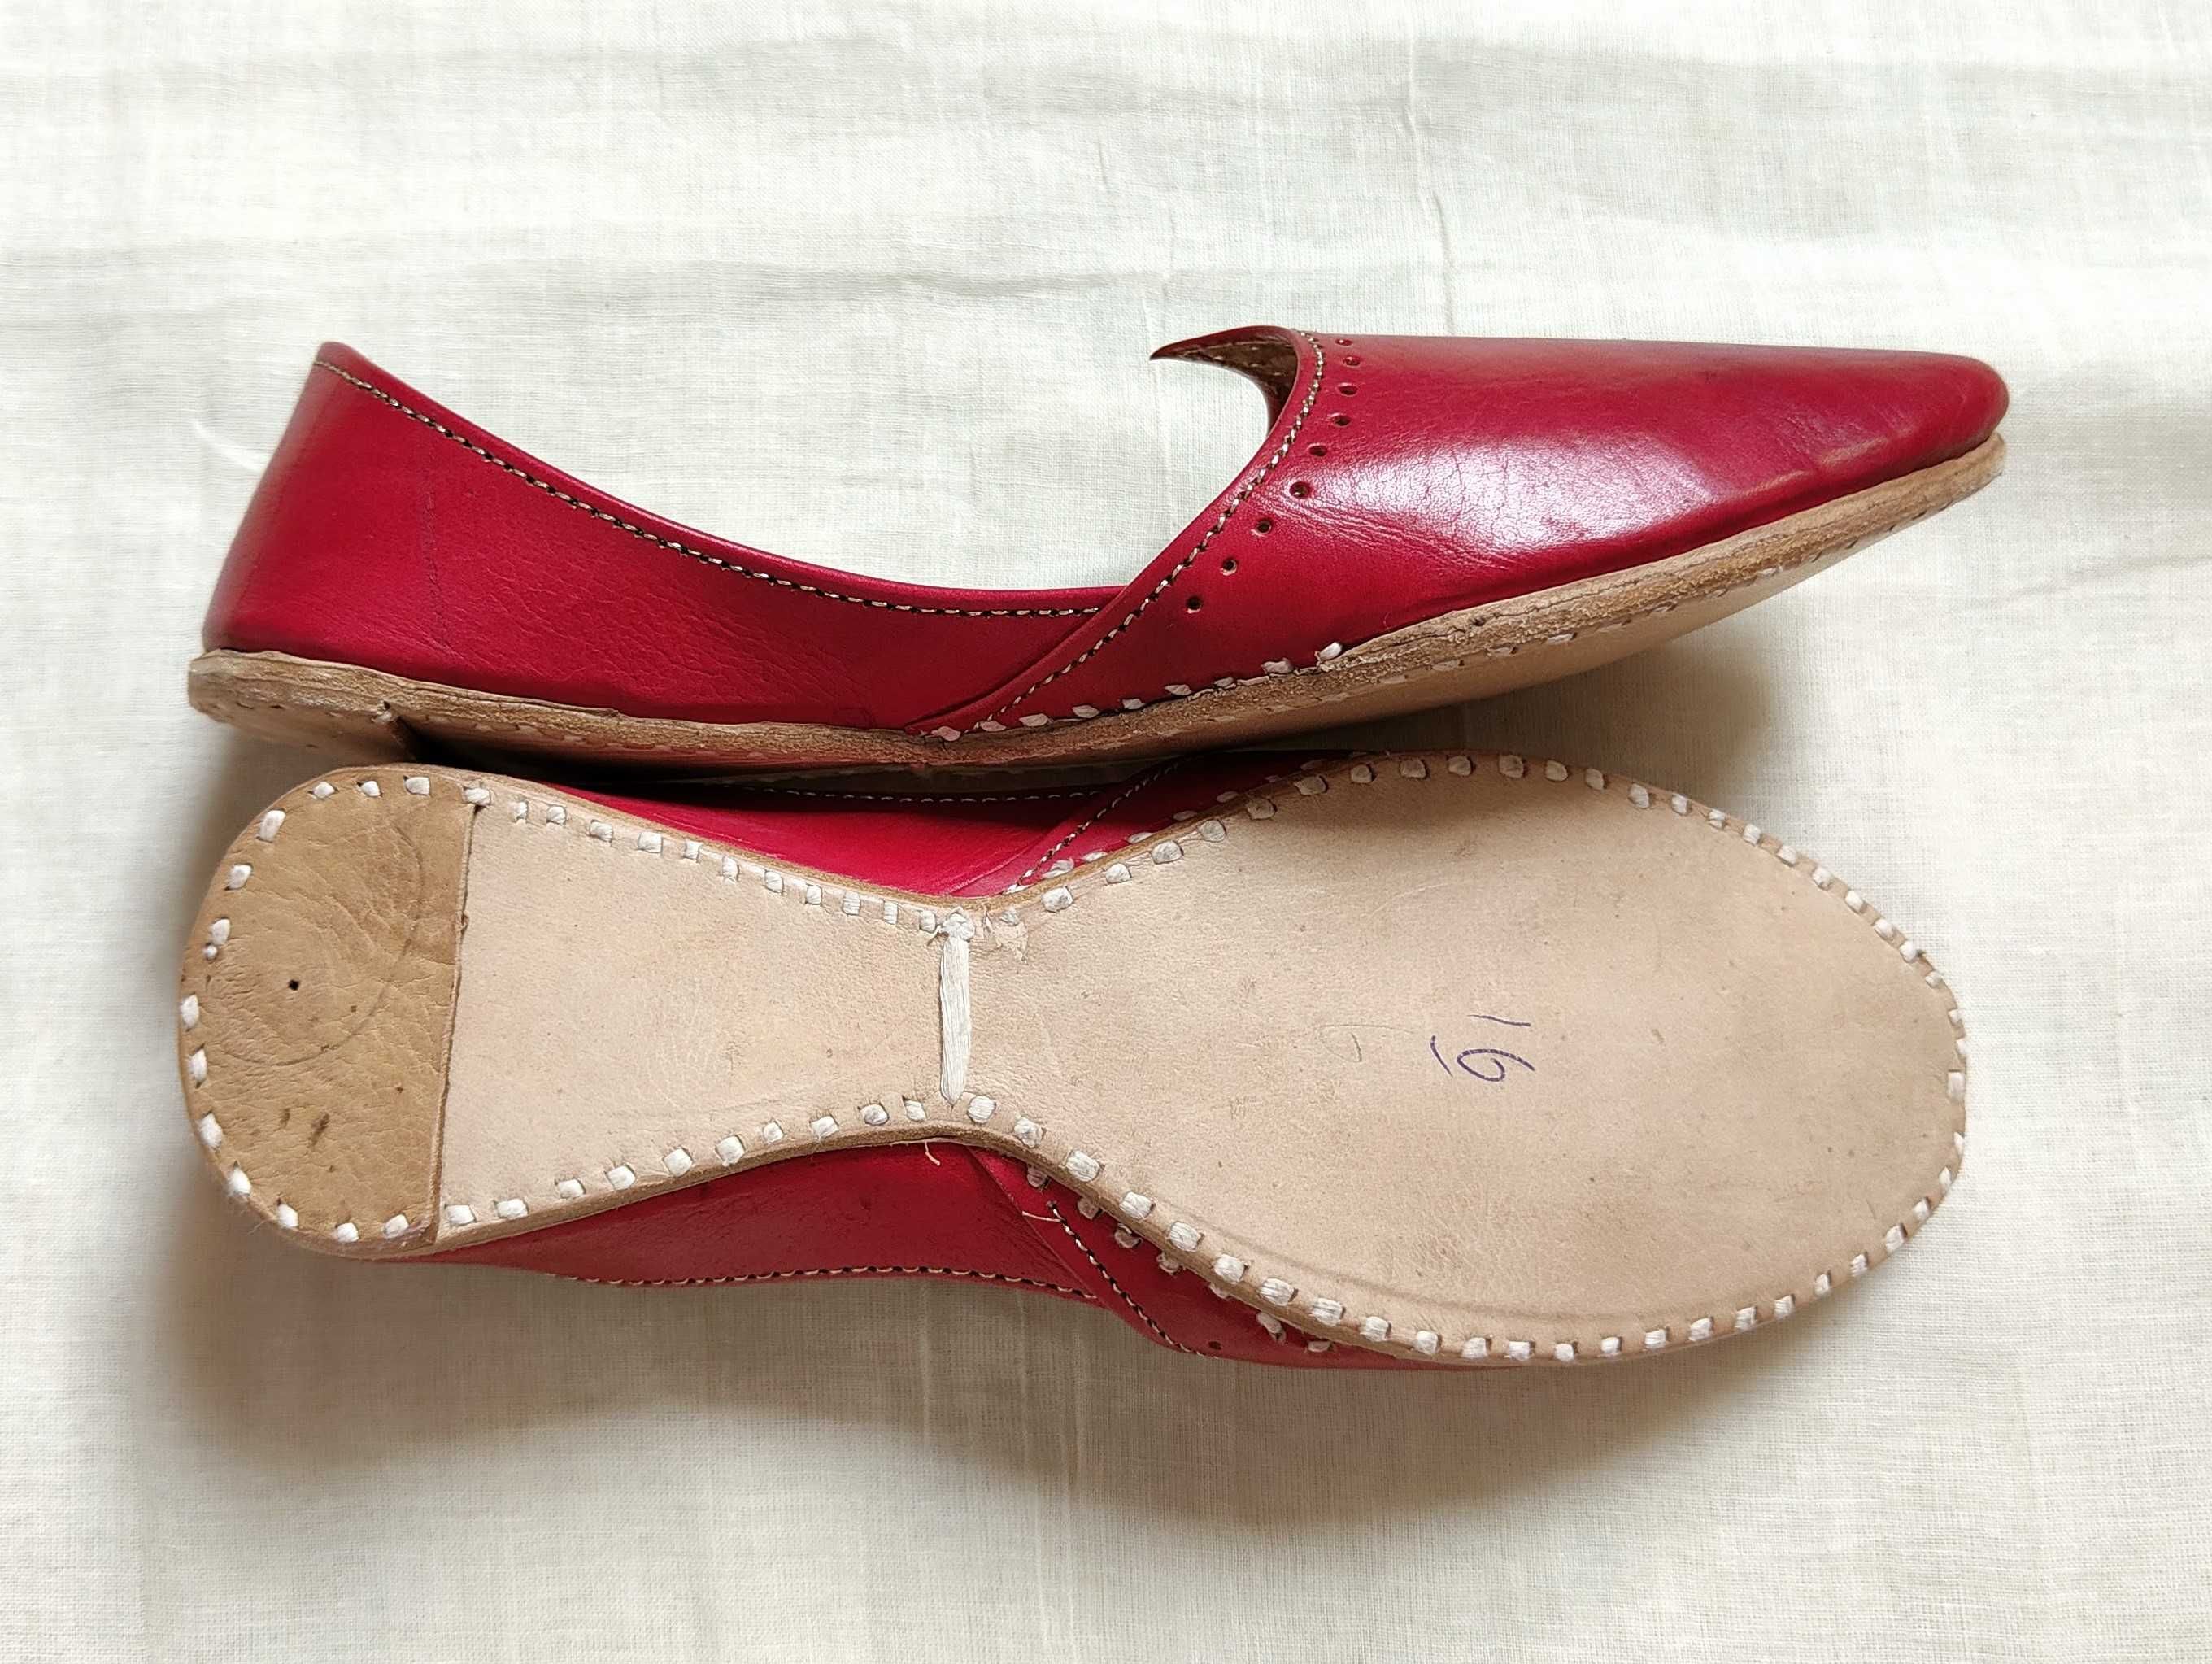 Czerwone skórzane buty balerinki 39 skóra orient indyjskie khussa